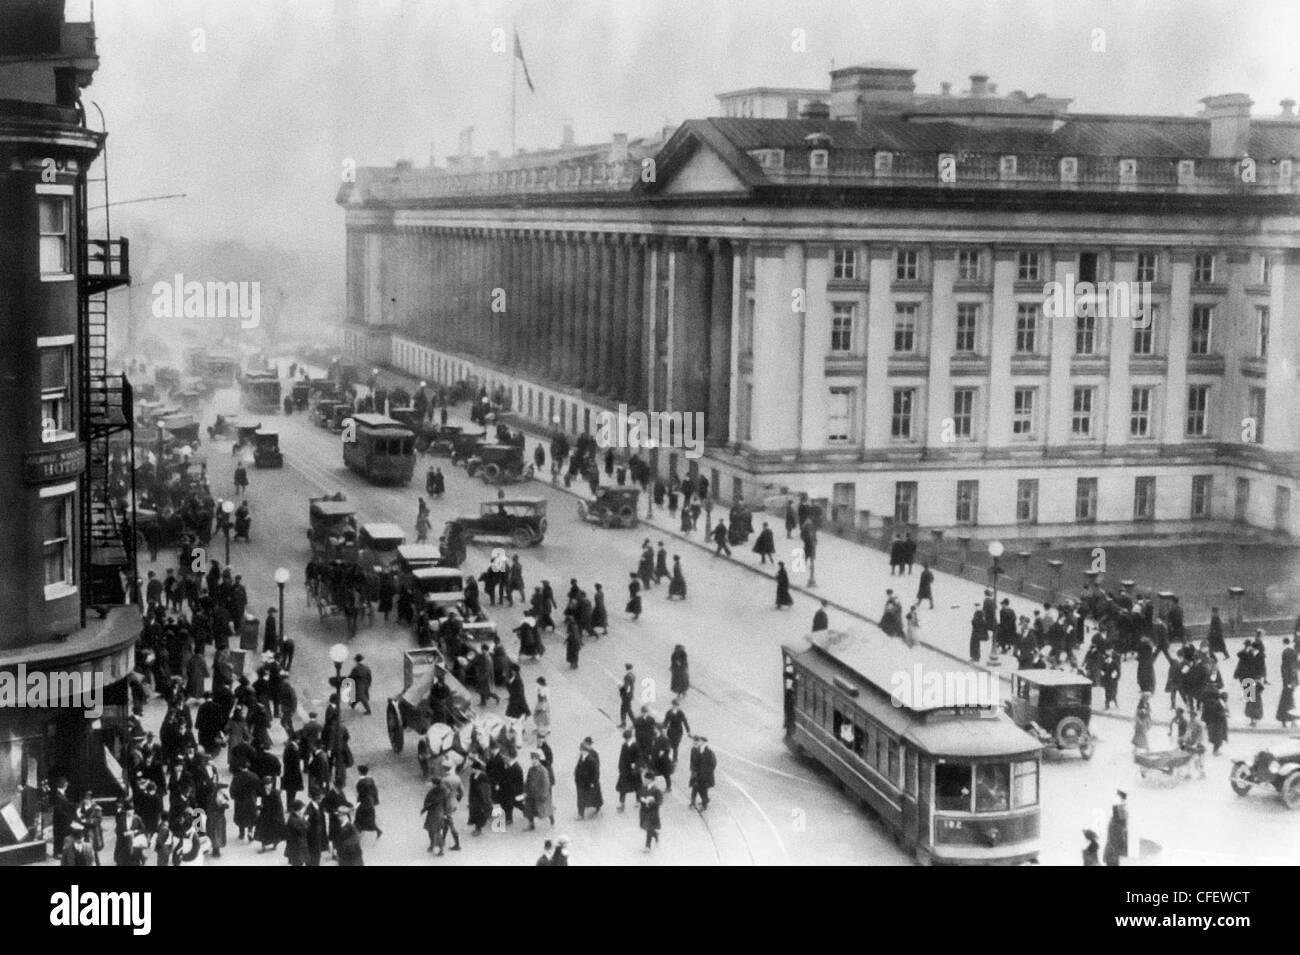 Washington, D.C. - Secrétariat du bâtiment d'angle de la 15e & G Street, l'engorgement du trafic, avec une faible vue aérienne, vers 1917 Banque D'Images